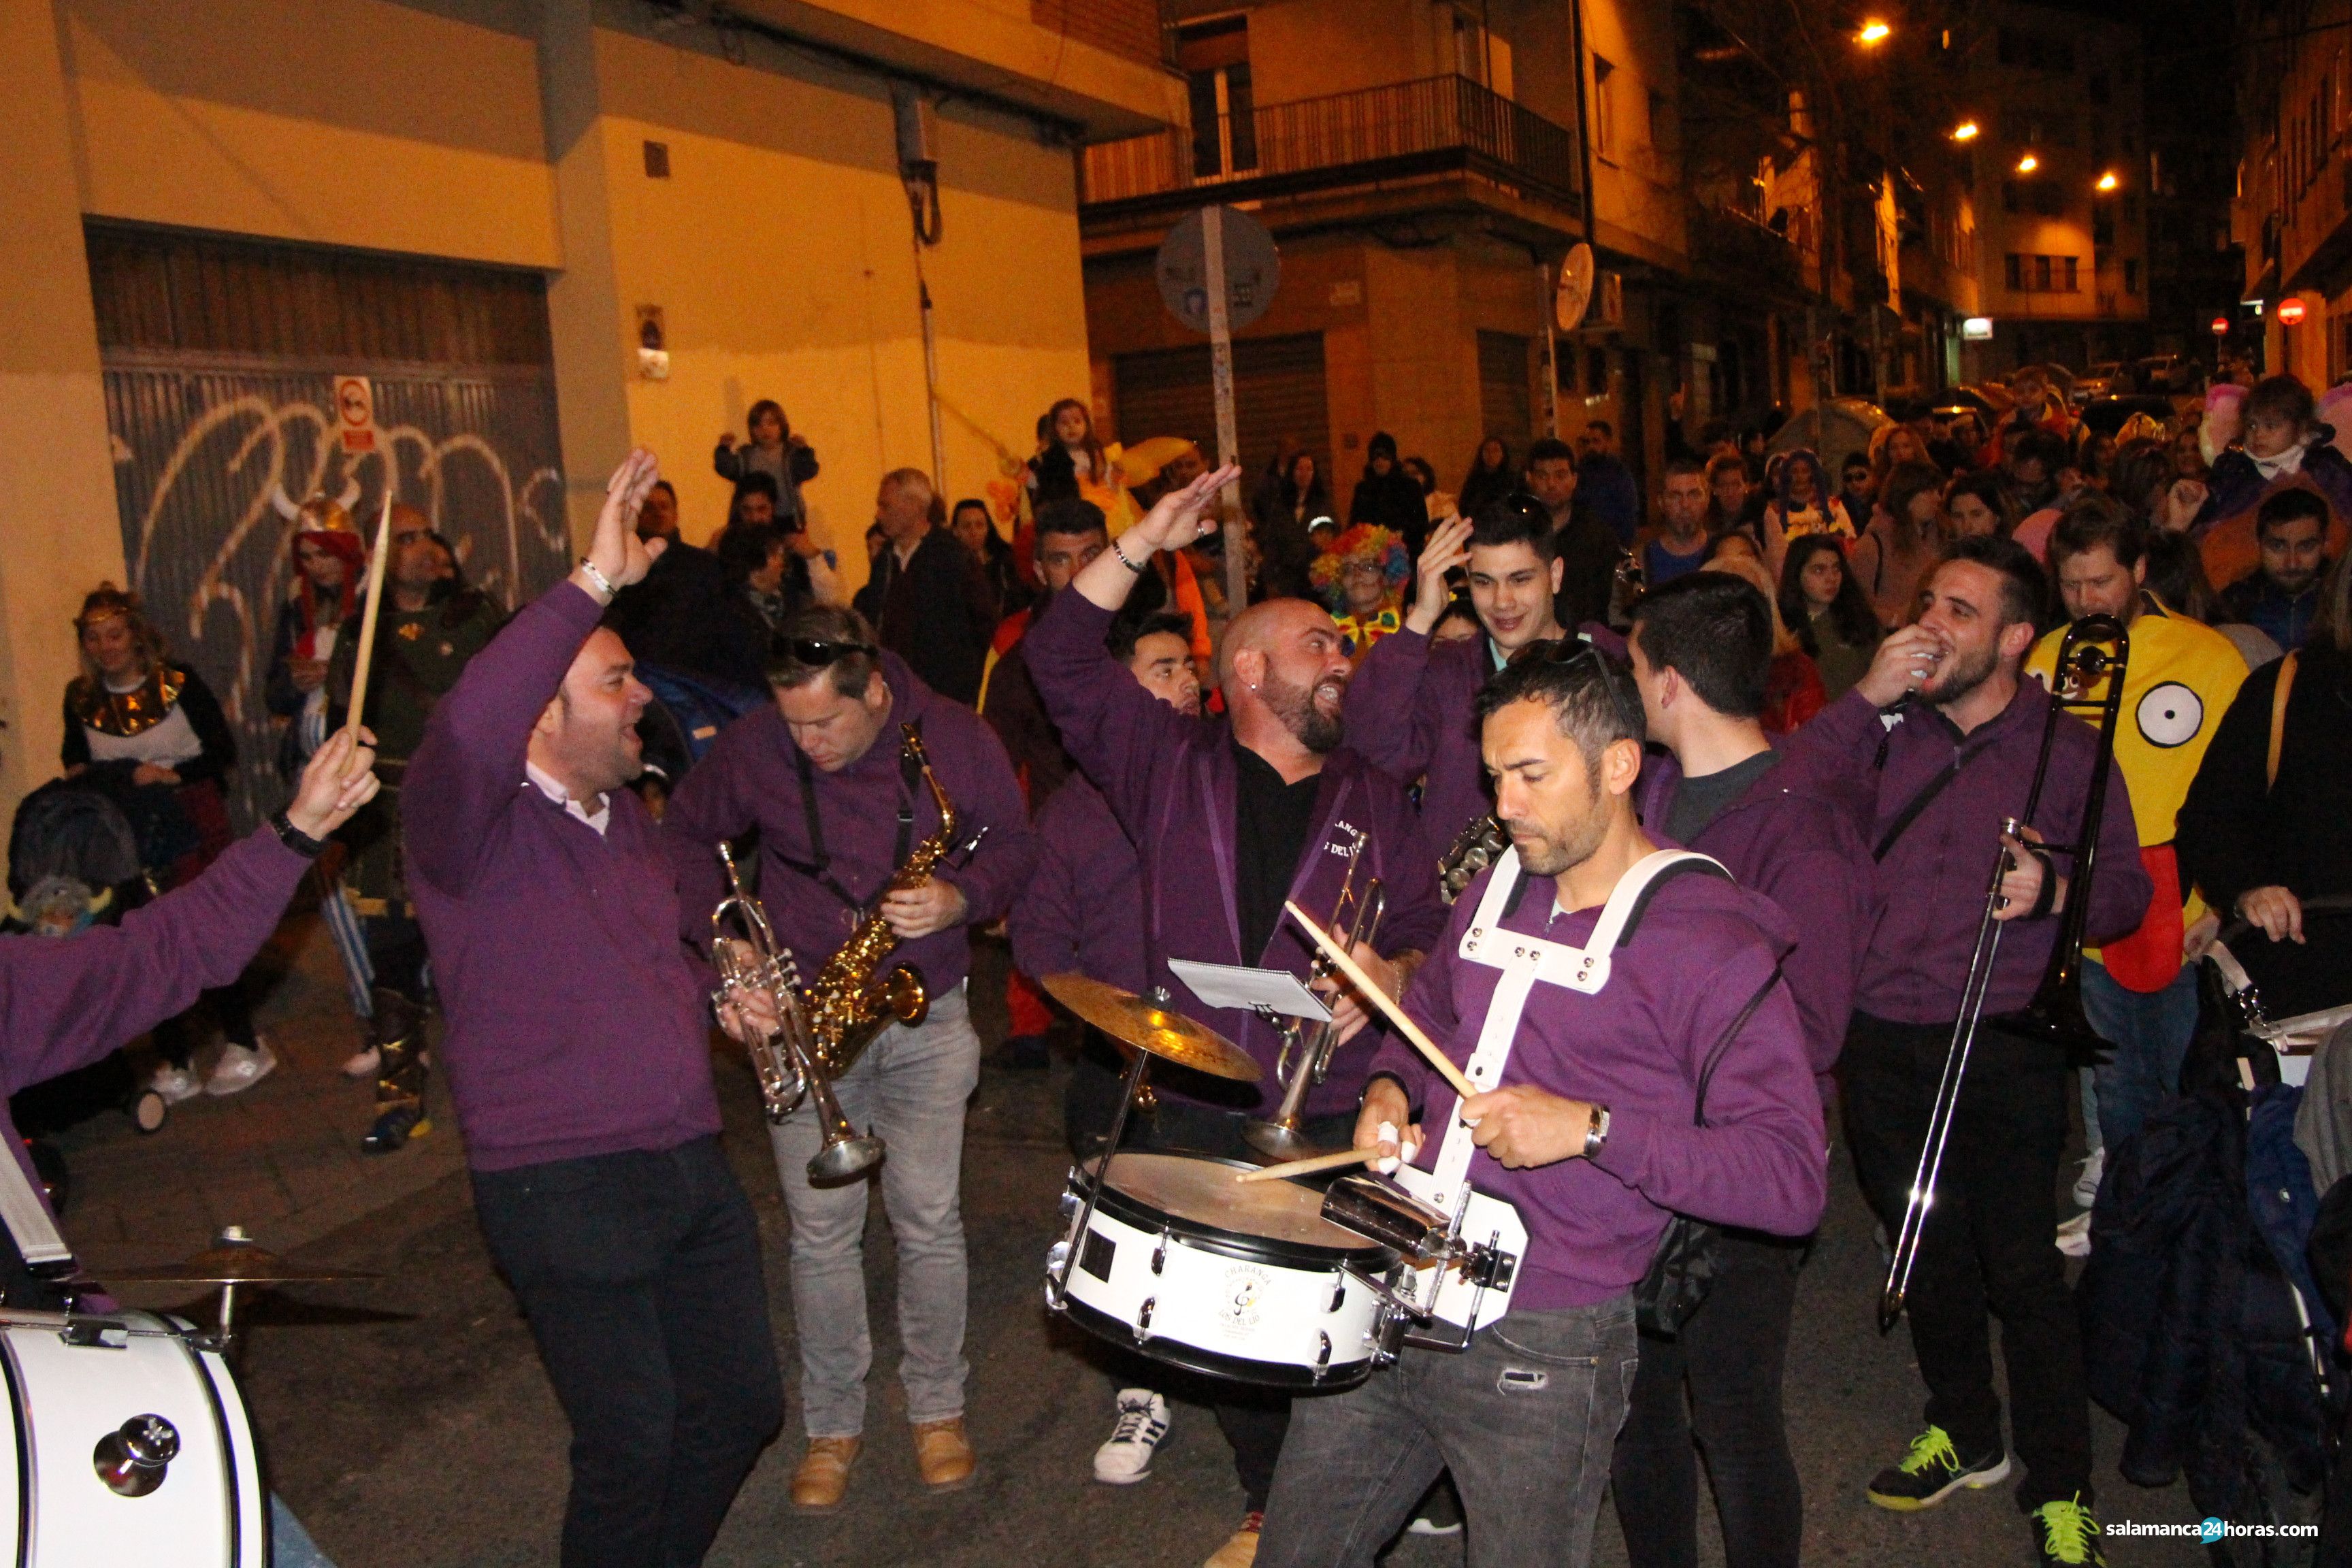  Carnaval barrio del oeste (24 02 2020) (48) 